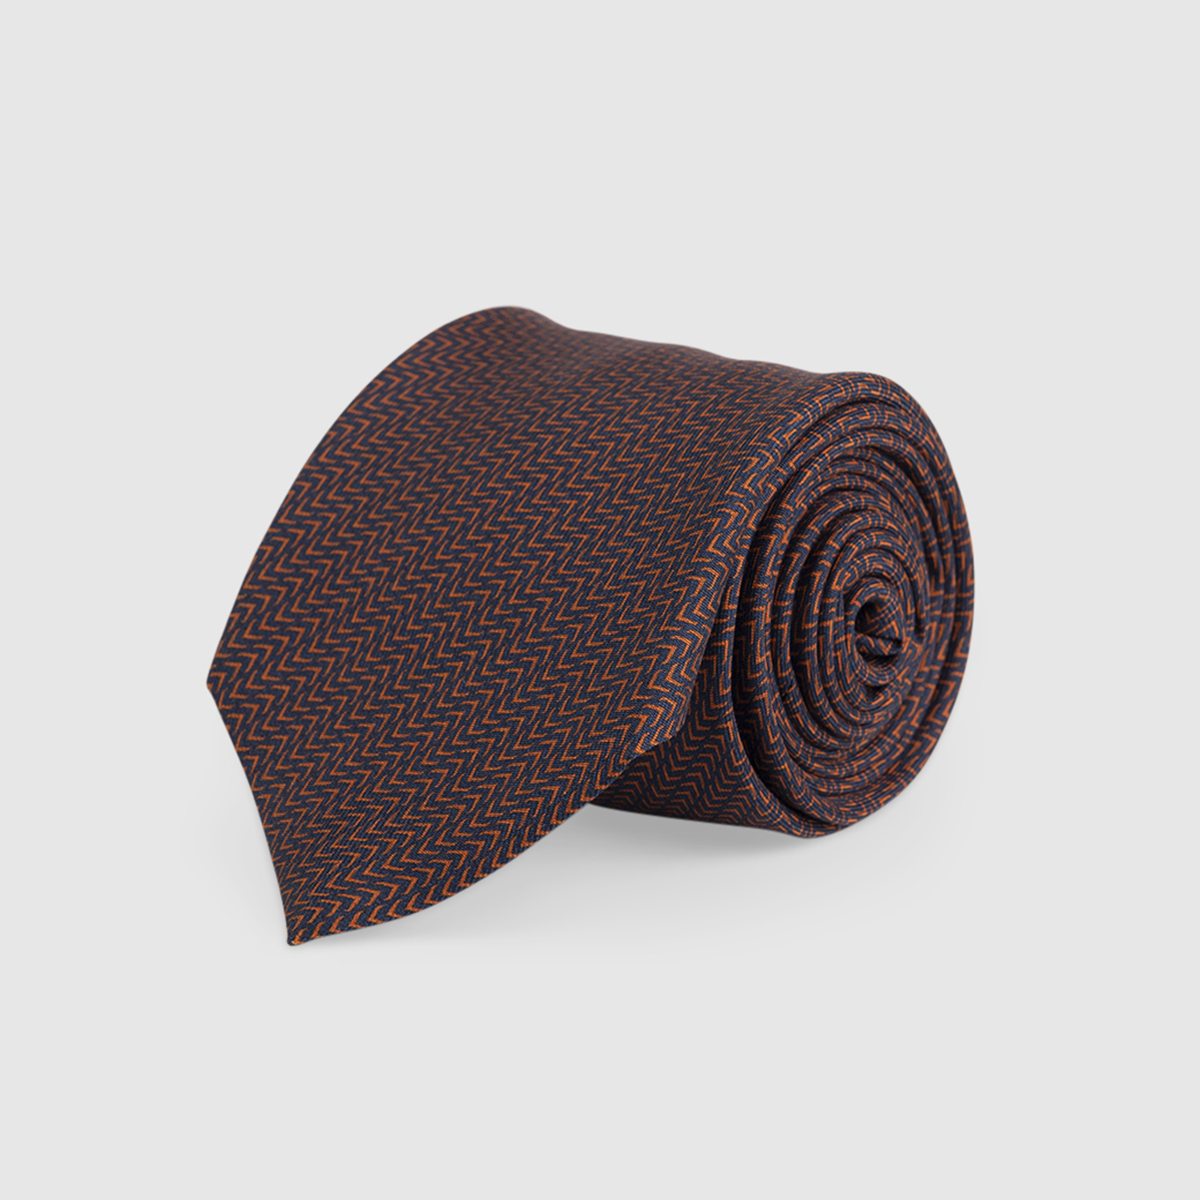 Blue/Orange 3-Fold Silk Tie with Patterns